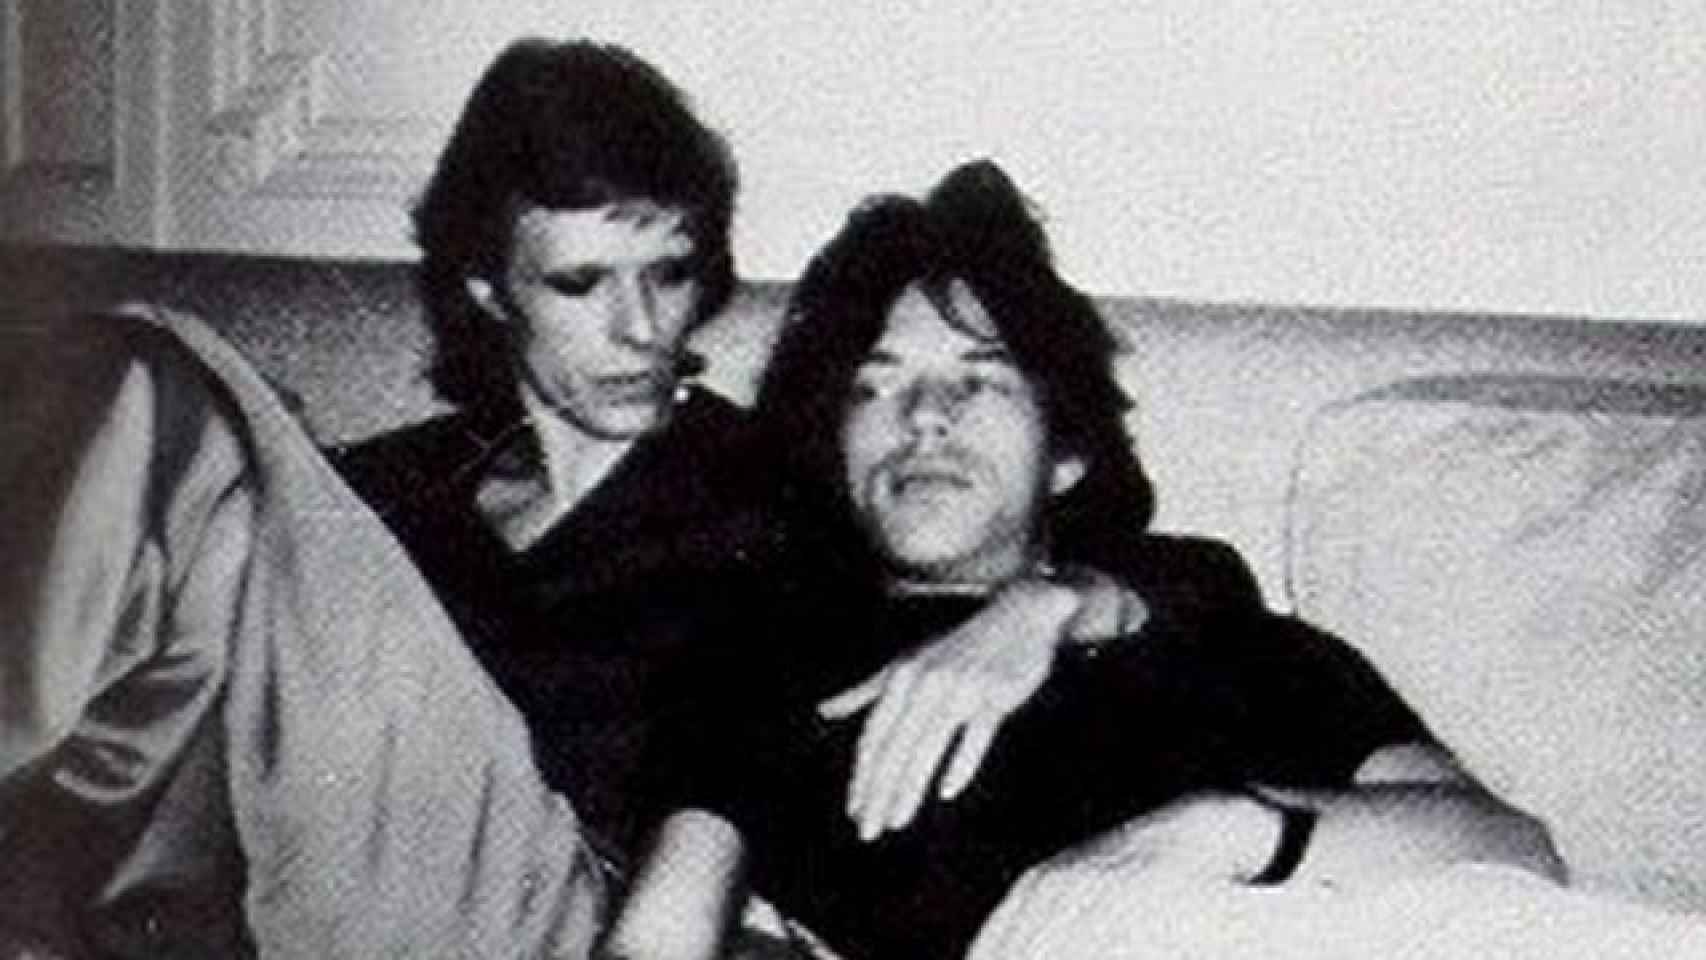 David Bowie y Mick Jagger, de quienes se comentó que mantuvieron una relación.